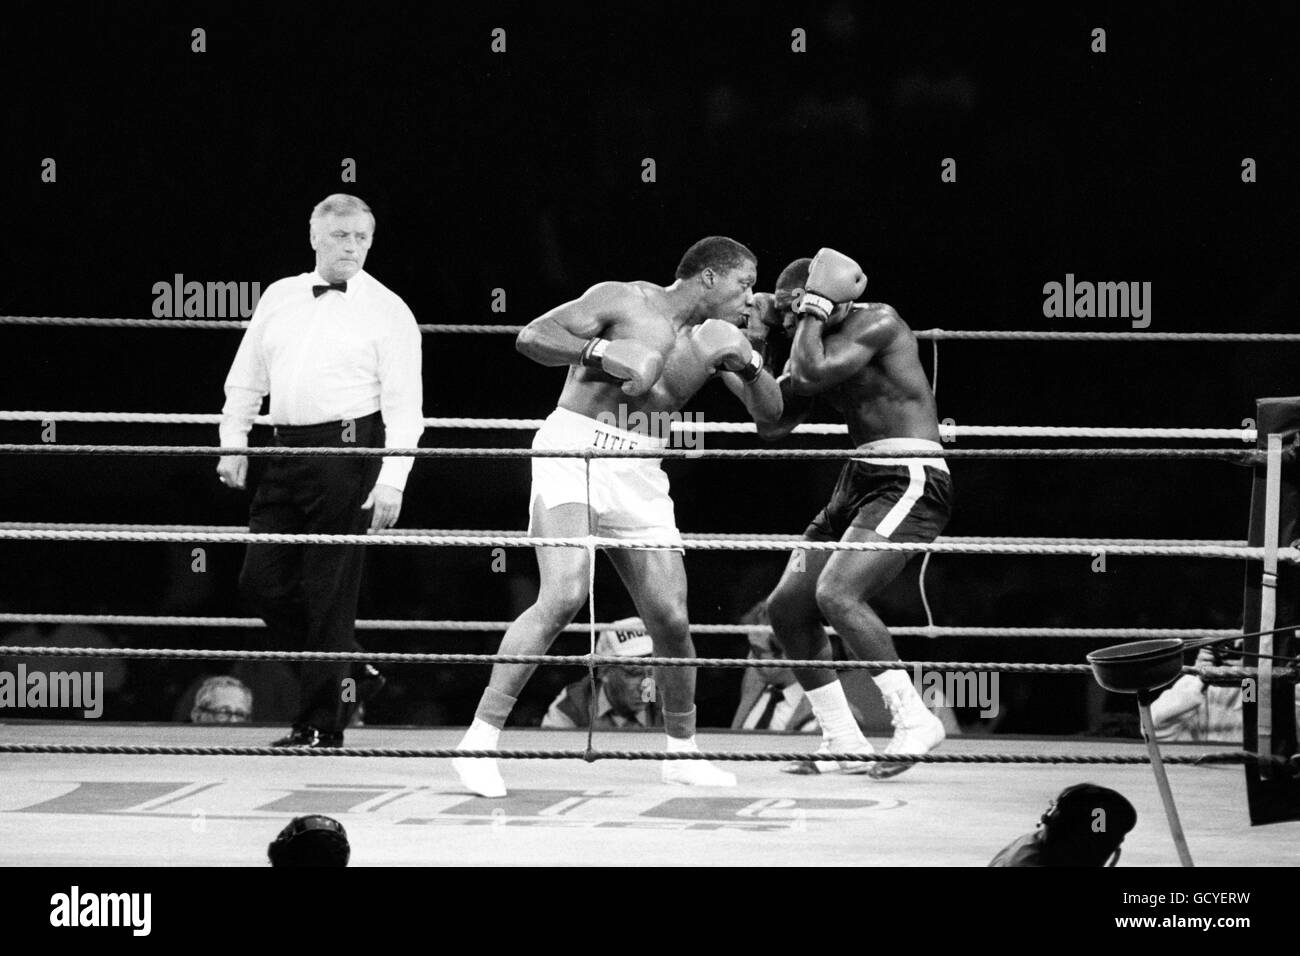 Boxe - poids lourd - Gary Mason v Mark Young - Wembley Stadium, Londres.Gary Mason de Grande-Bretagne en action contre l'américain Mark Young. Banque D'Images